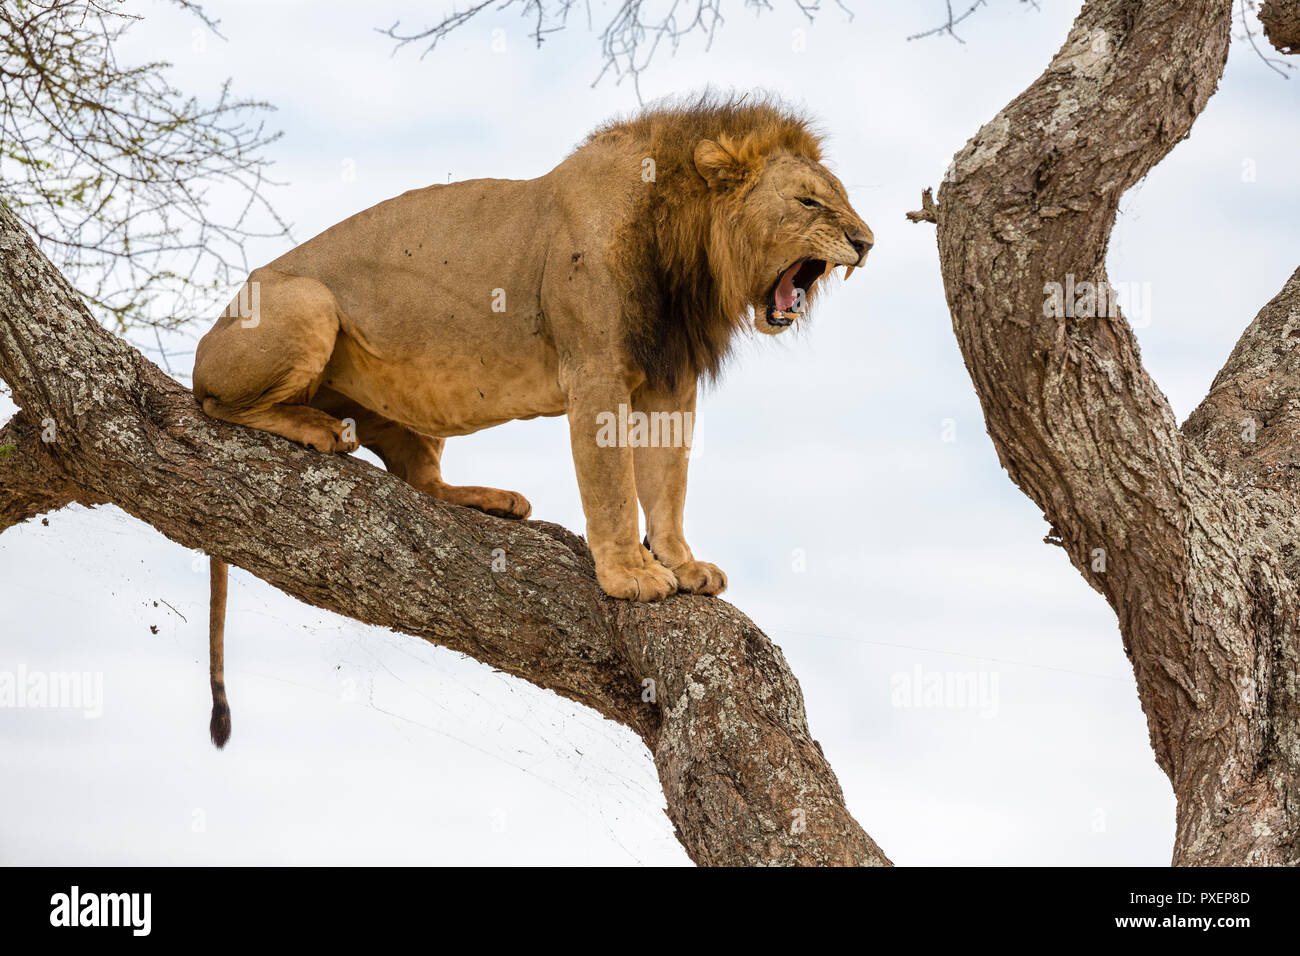 Tree-climbing lion rugissant, parc national de Tarangire, Tanzanie Banque D'Images